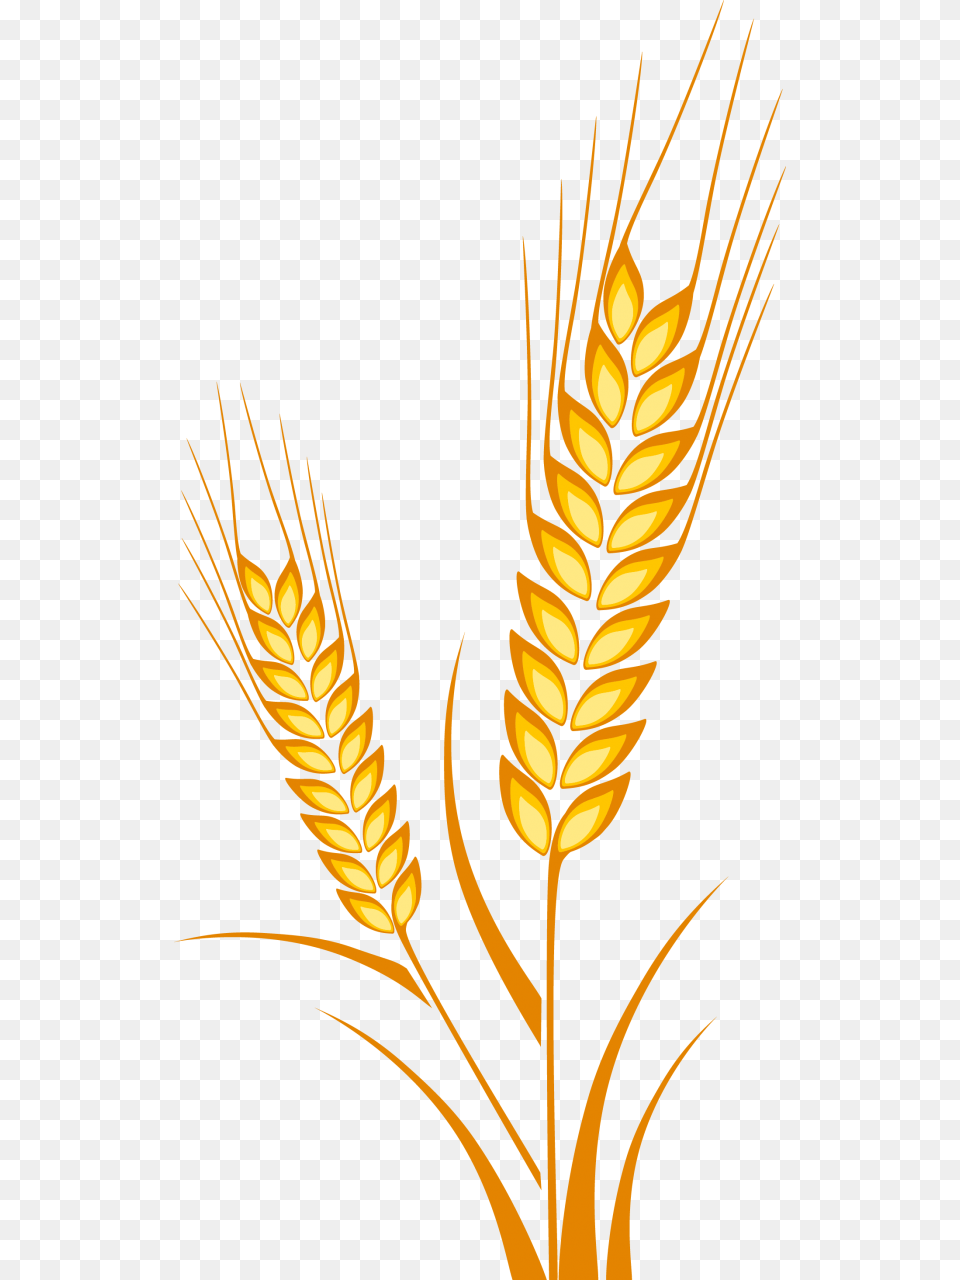 Vector Crops Drawing Cereal Grain Espiga De Trigo Dibujo, Food, Produce, Wheat Png